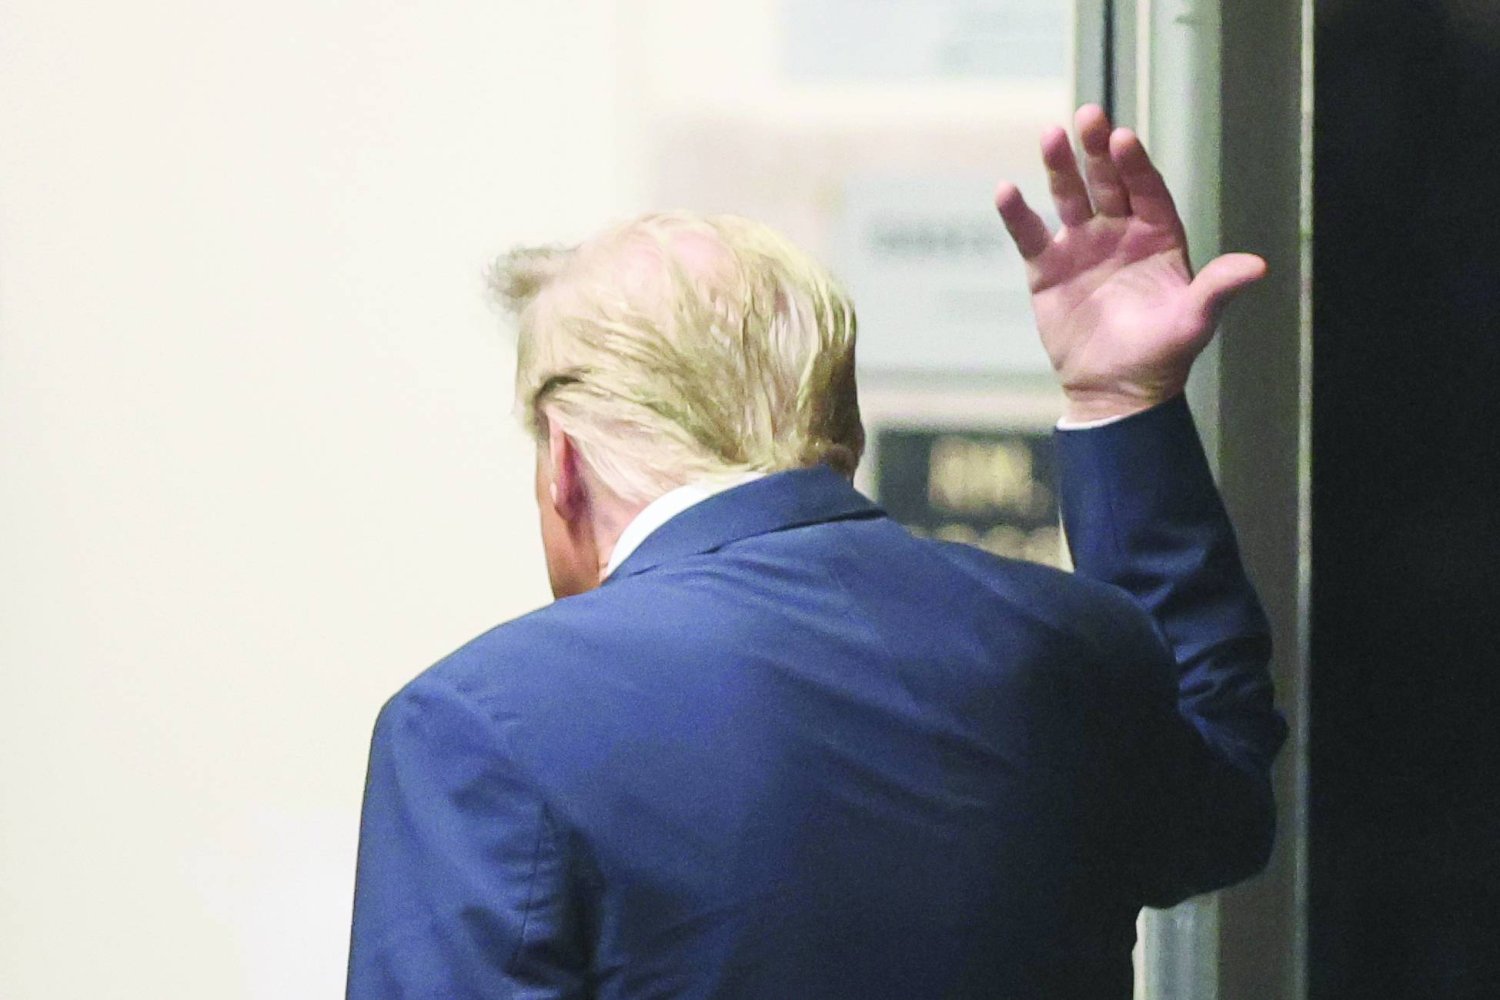 
الرئيس السابق دونالد ترمب خلال توجهه إلى محكمة نيويورك أمس (أ.ب)